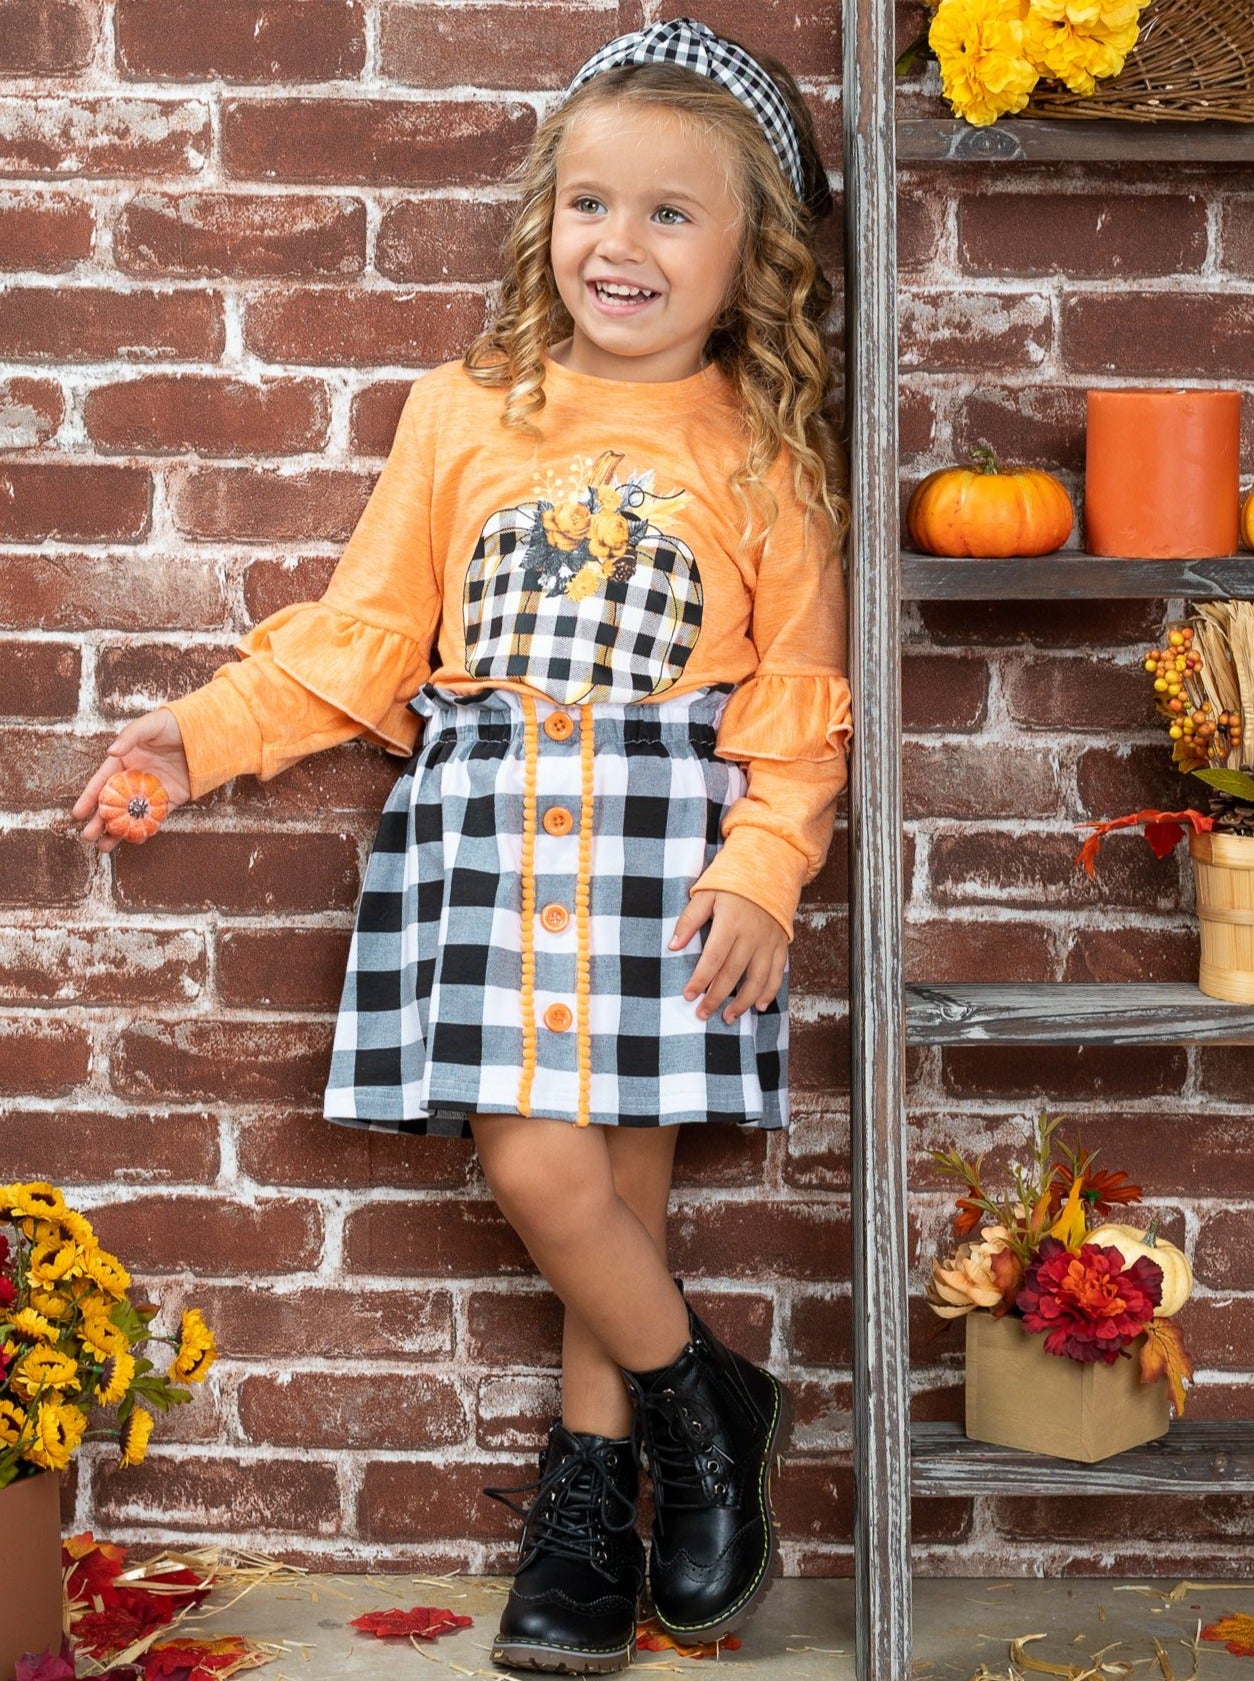 Girls Fall Outfits | Pumpkin Pullover & Skirt Set - Mia Belle Girls